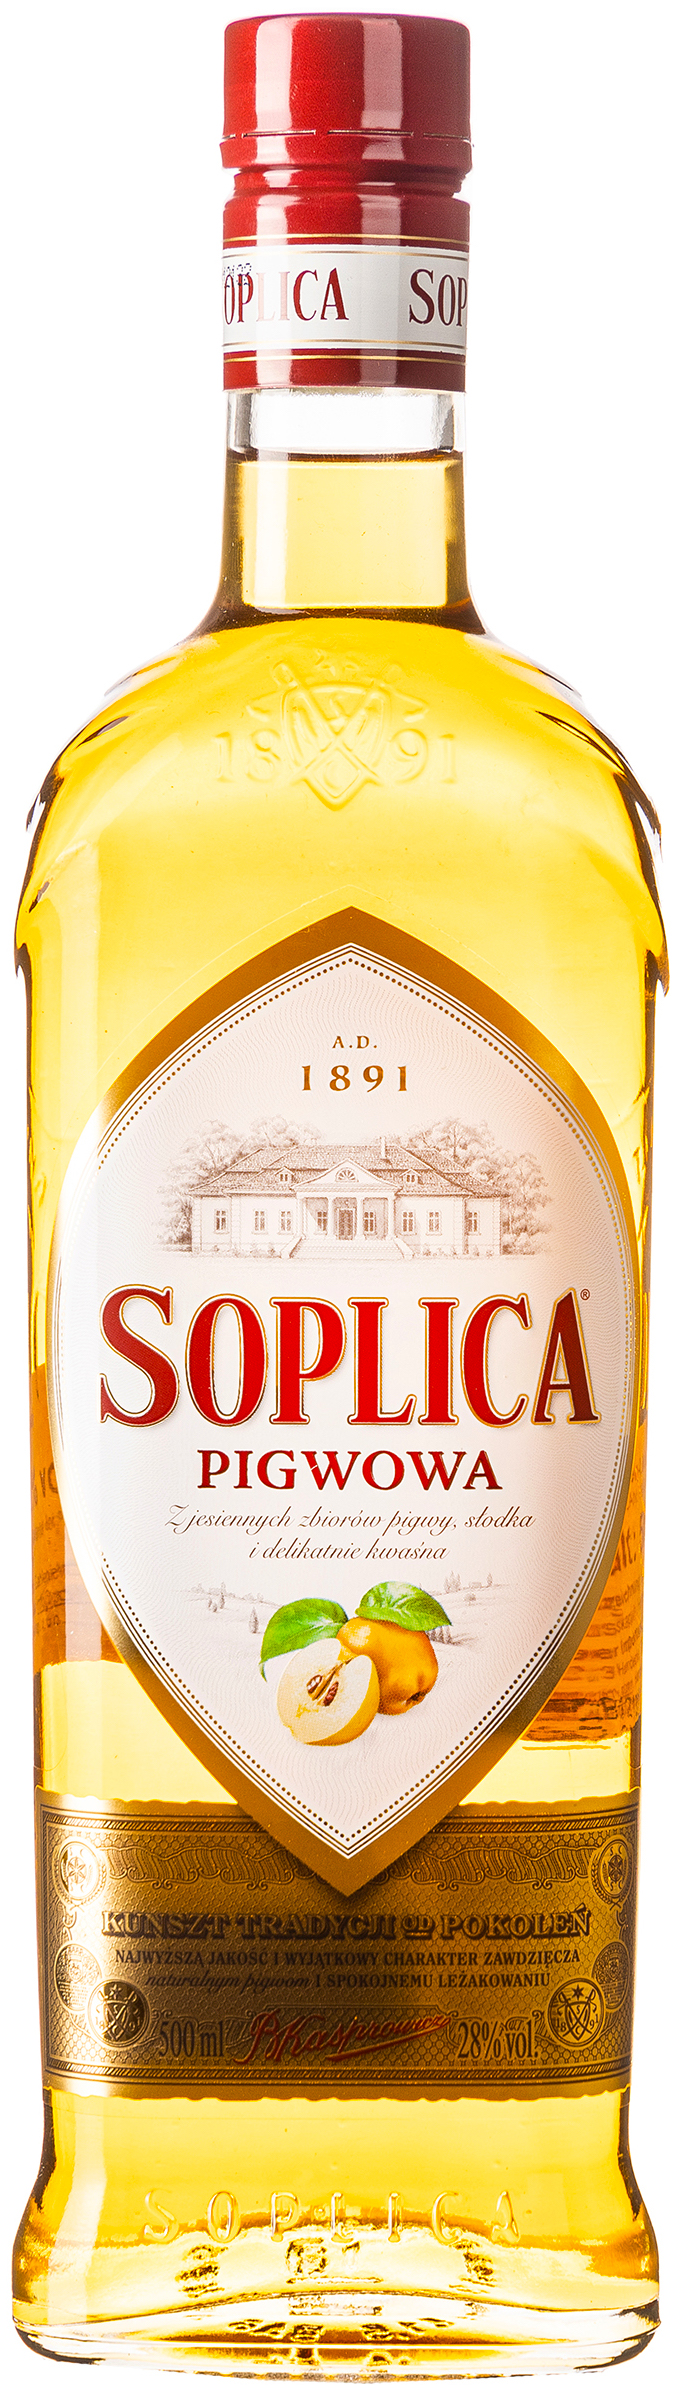 Soplica Pigwowa Quitte 28% vol. 0,5L